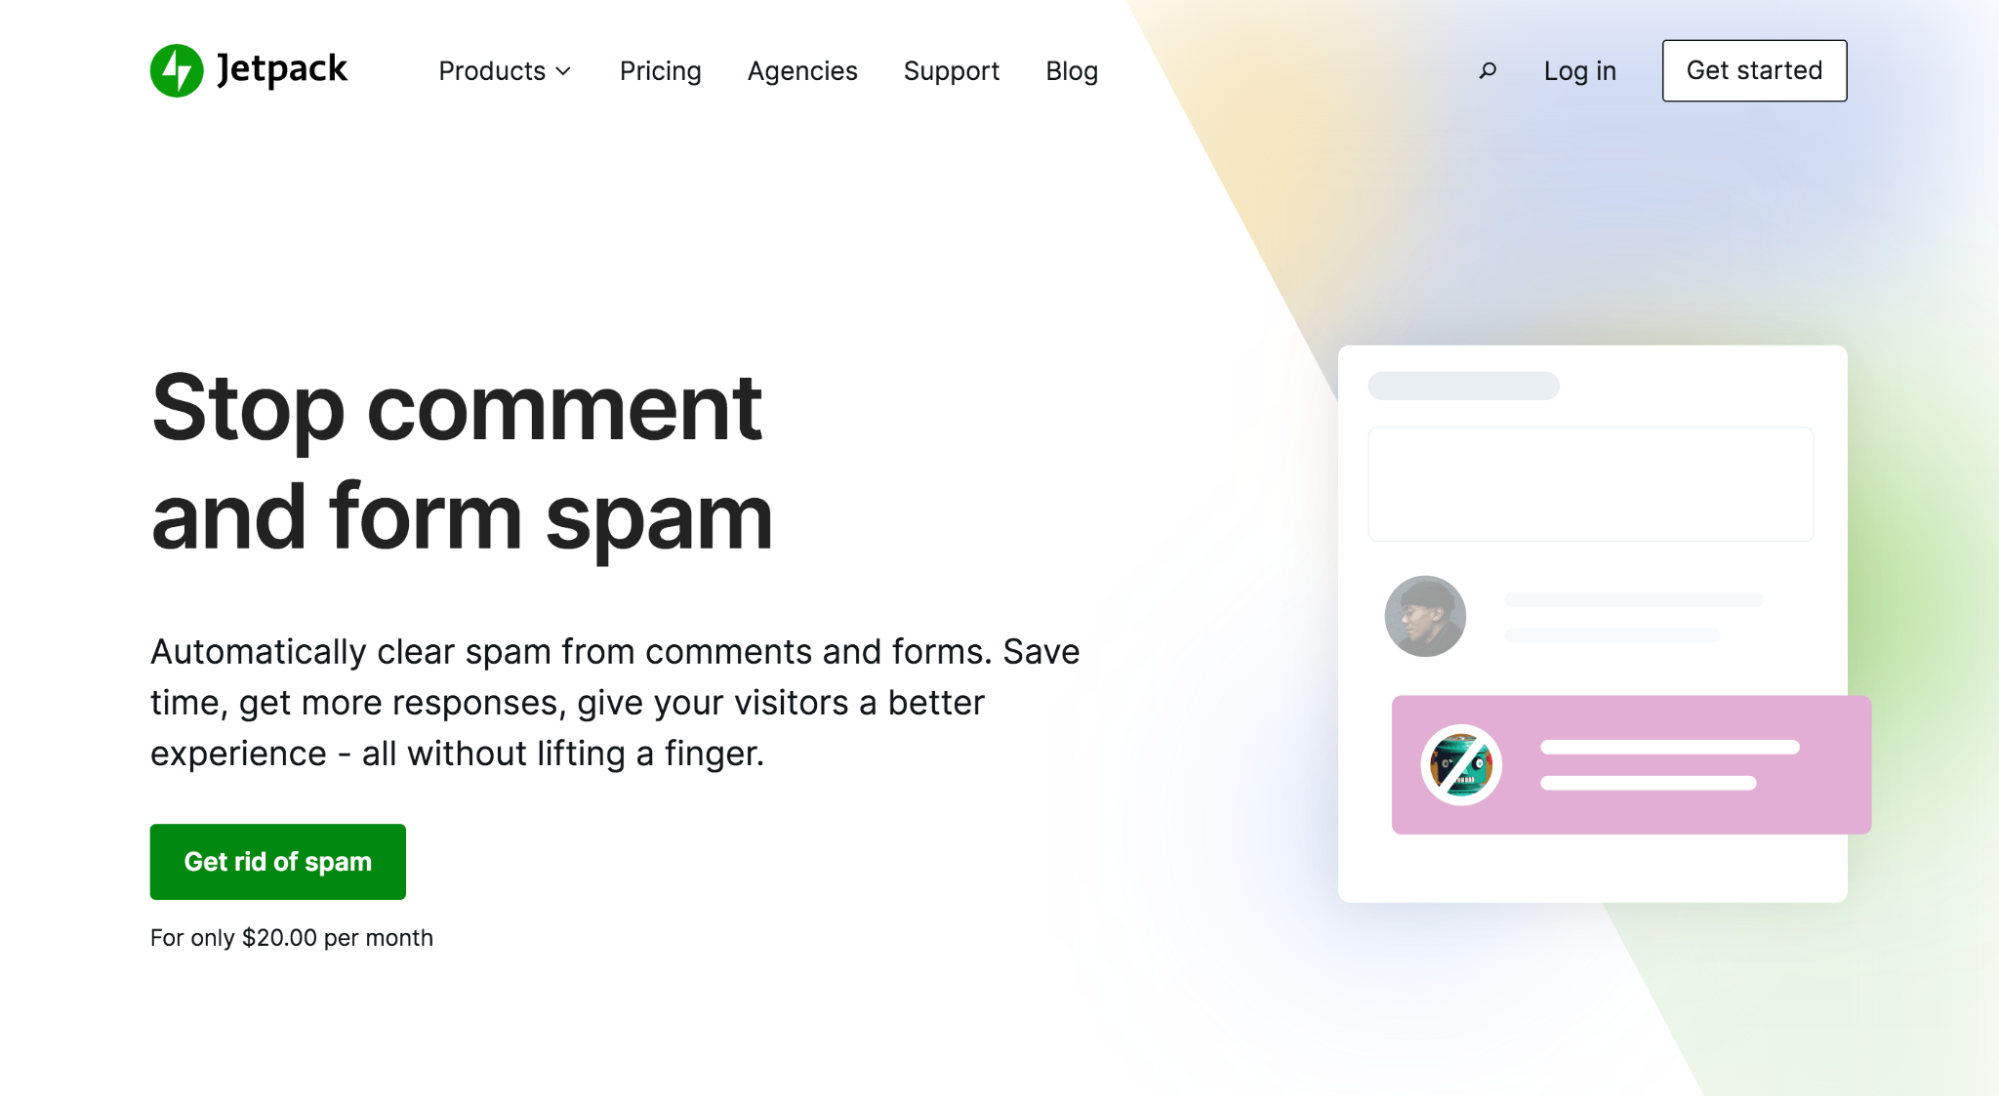 صورة رئيسية للصفحة الرئيسية لبرنامج Jetpack Anti-Spam مع الشعار ، "أوقف التعليق وشكل بريدًا عشوائيًا."